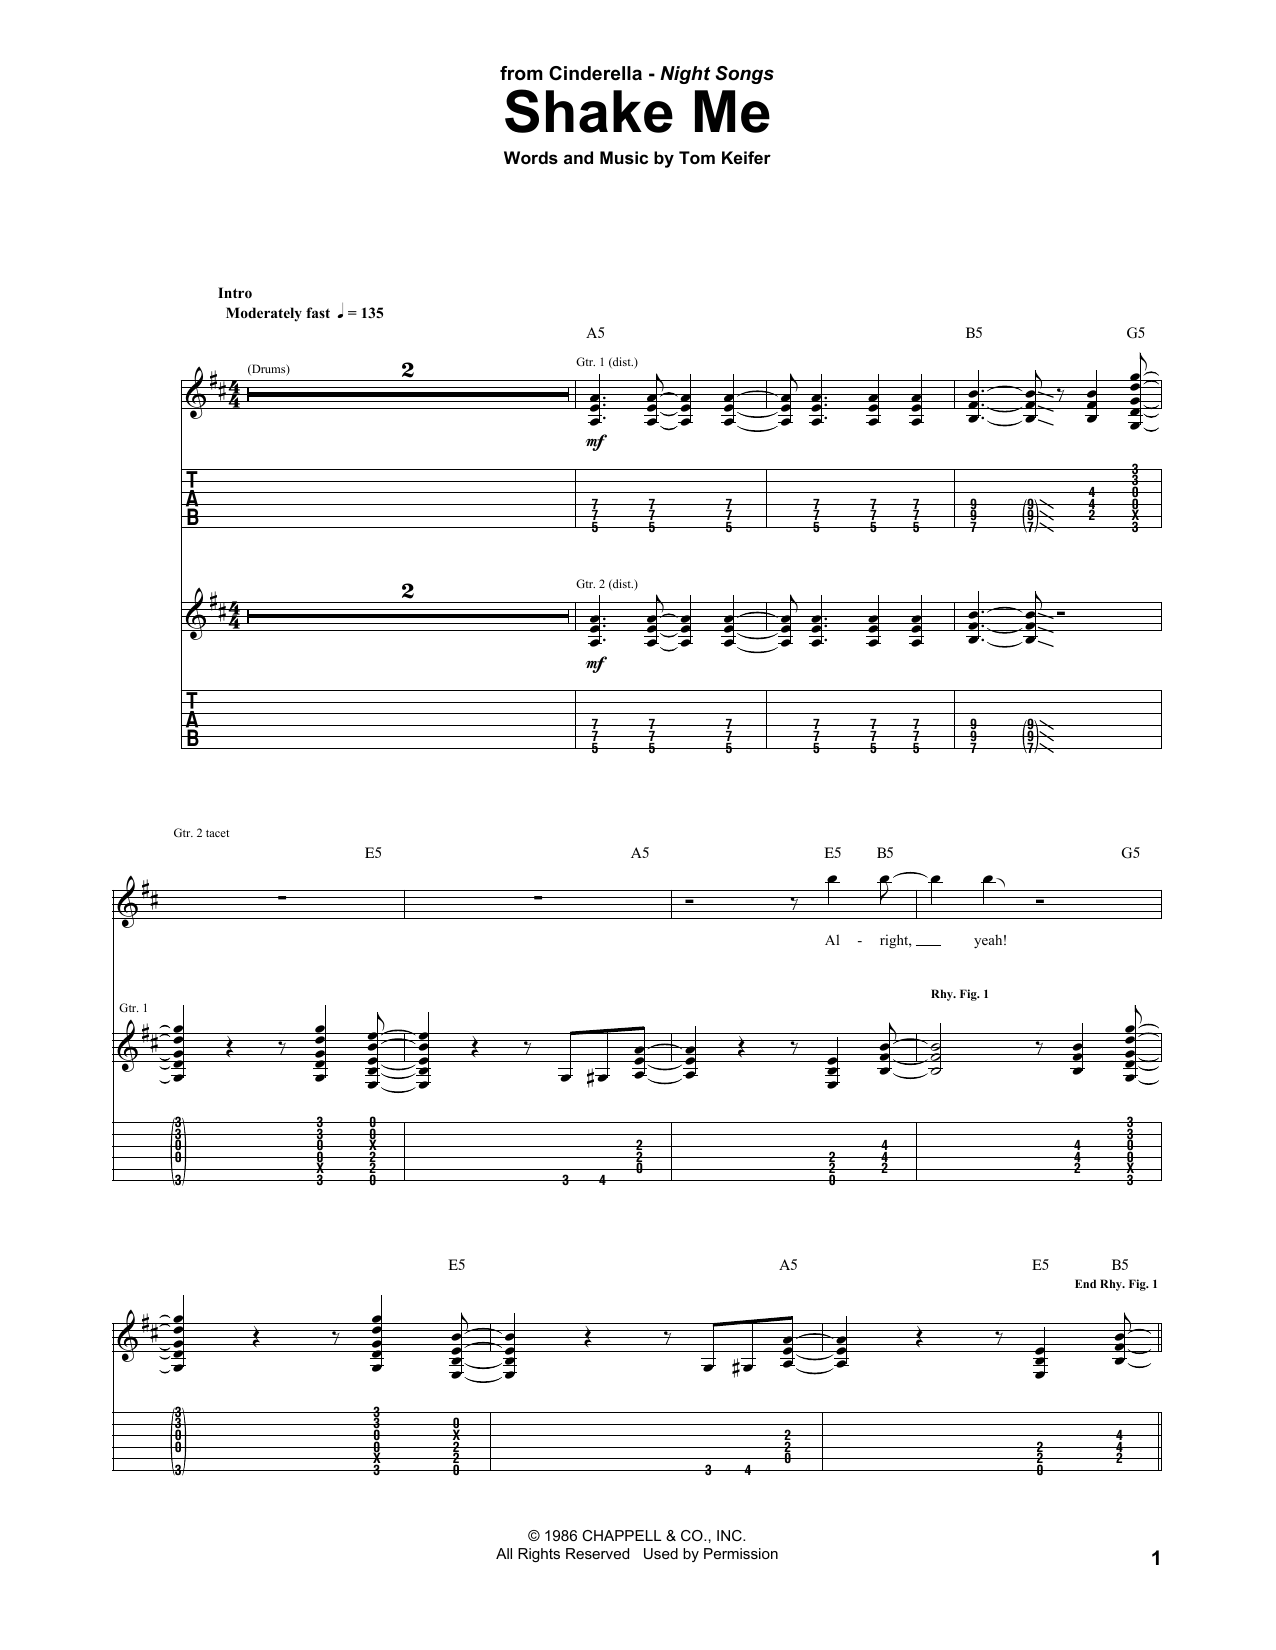 Cinderella Shake Me Sheet Music Pdf Notes Chords Rock Score Guitar Tab Download Printable Sku